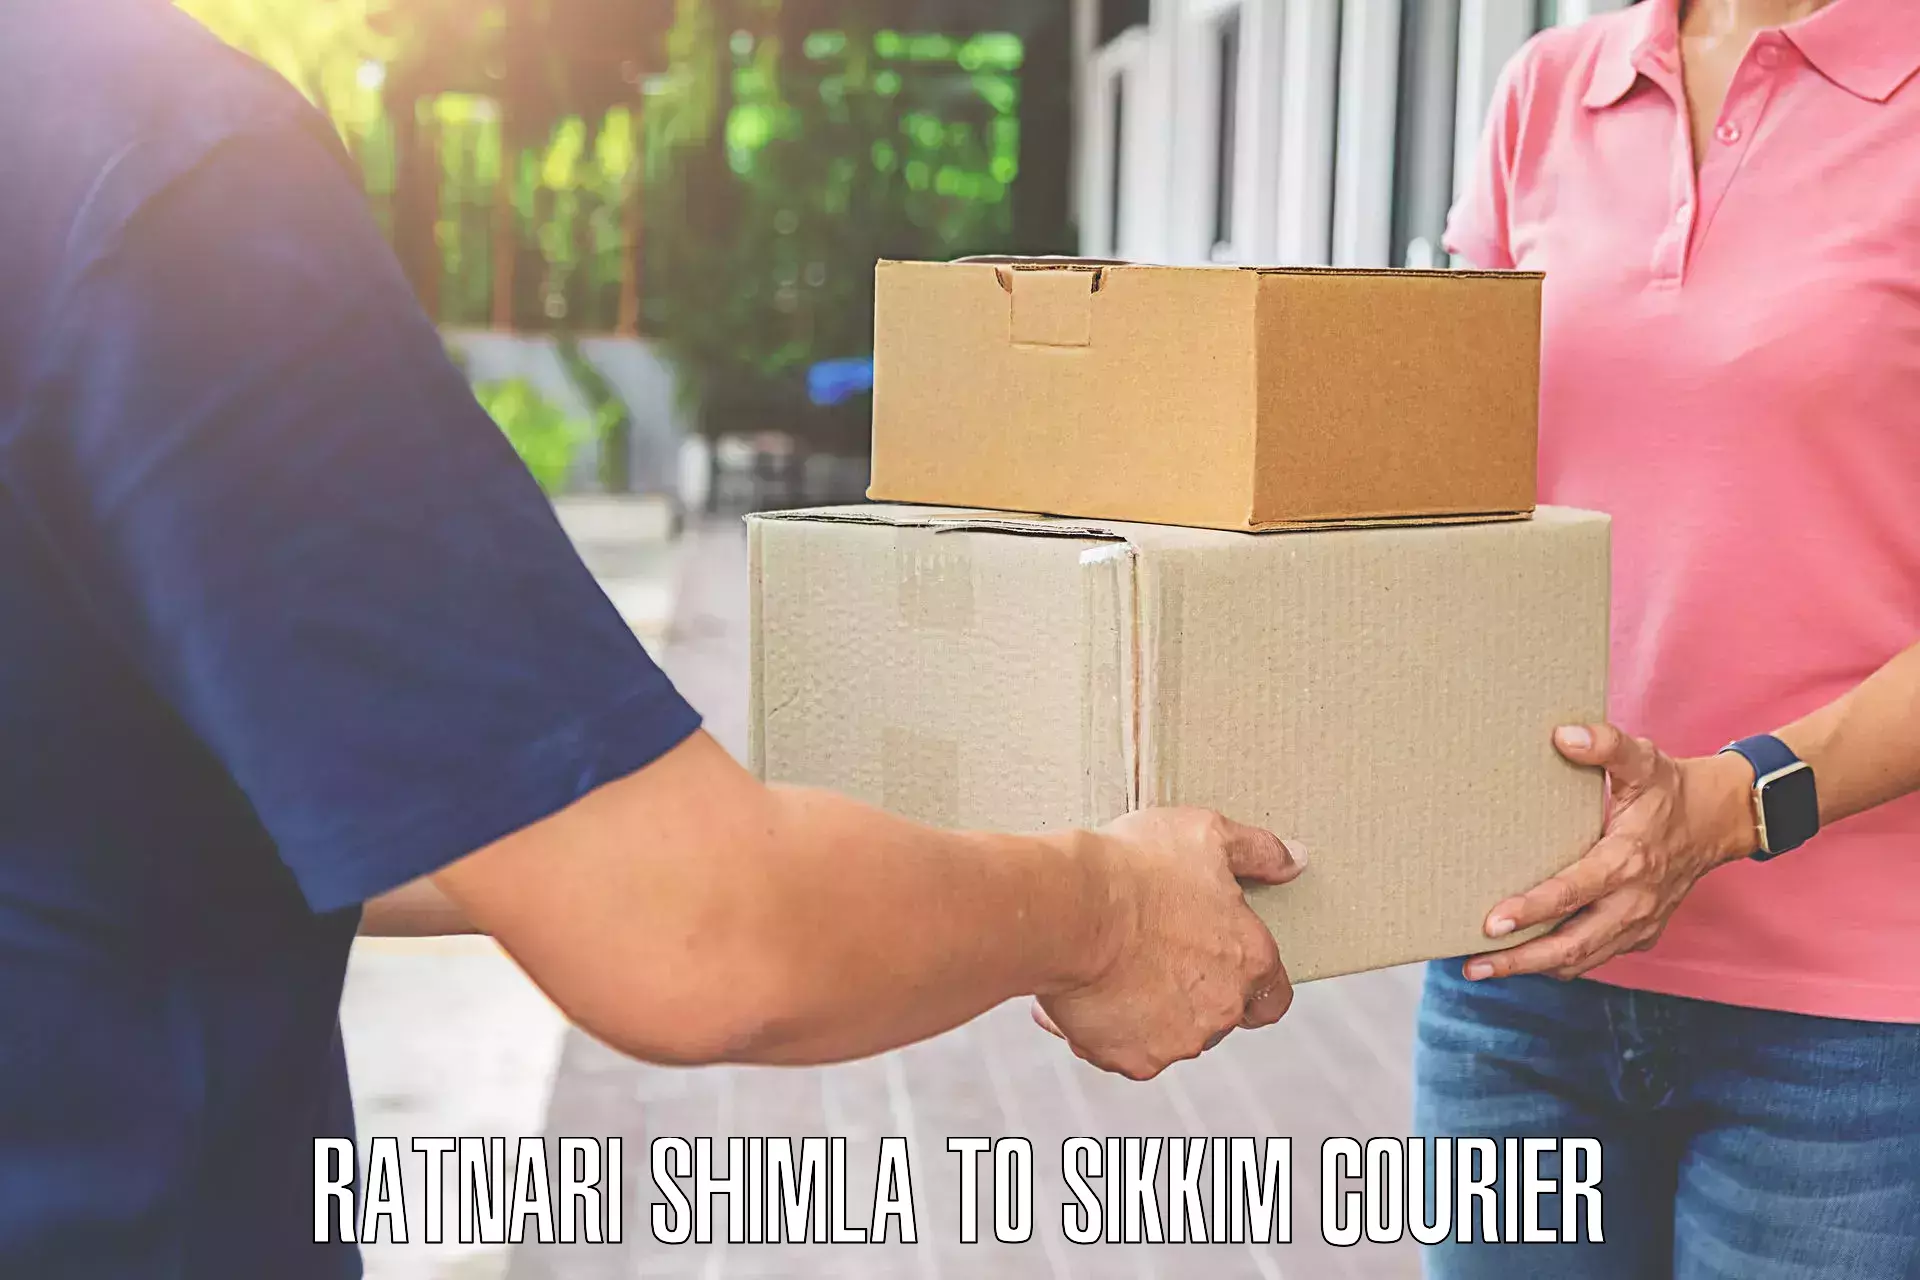 Efficient luggage delivery Ratnari Shimla to Singtam